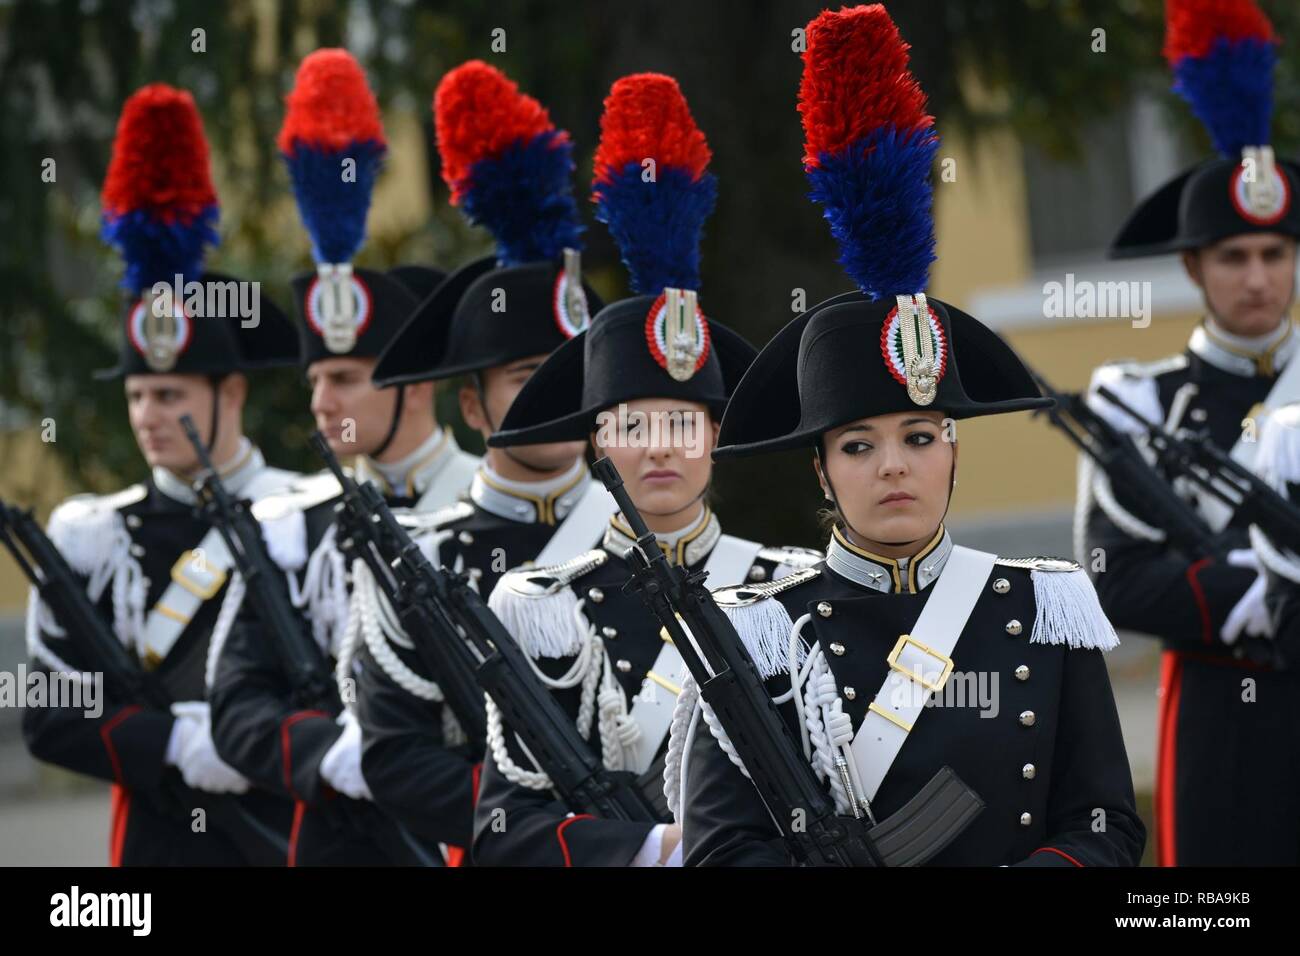 Les Carabinieri italiens de l'Ecole des Sous Officiers de Florence, Italie, durant la visite de Son Altesse Royale le Prince Charles, prince de Galles au centre d'excellence pour les unités de police de stabilité (COESPU) Vicenza, Italie, le 1 avril 2017. Banque D'Images